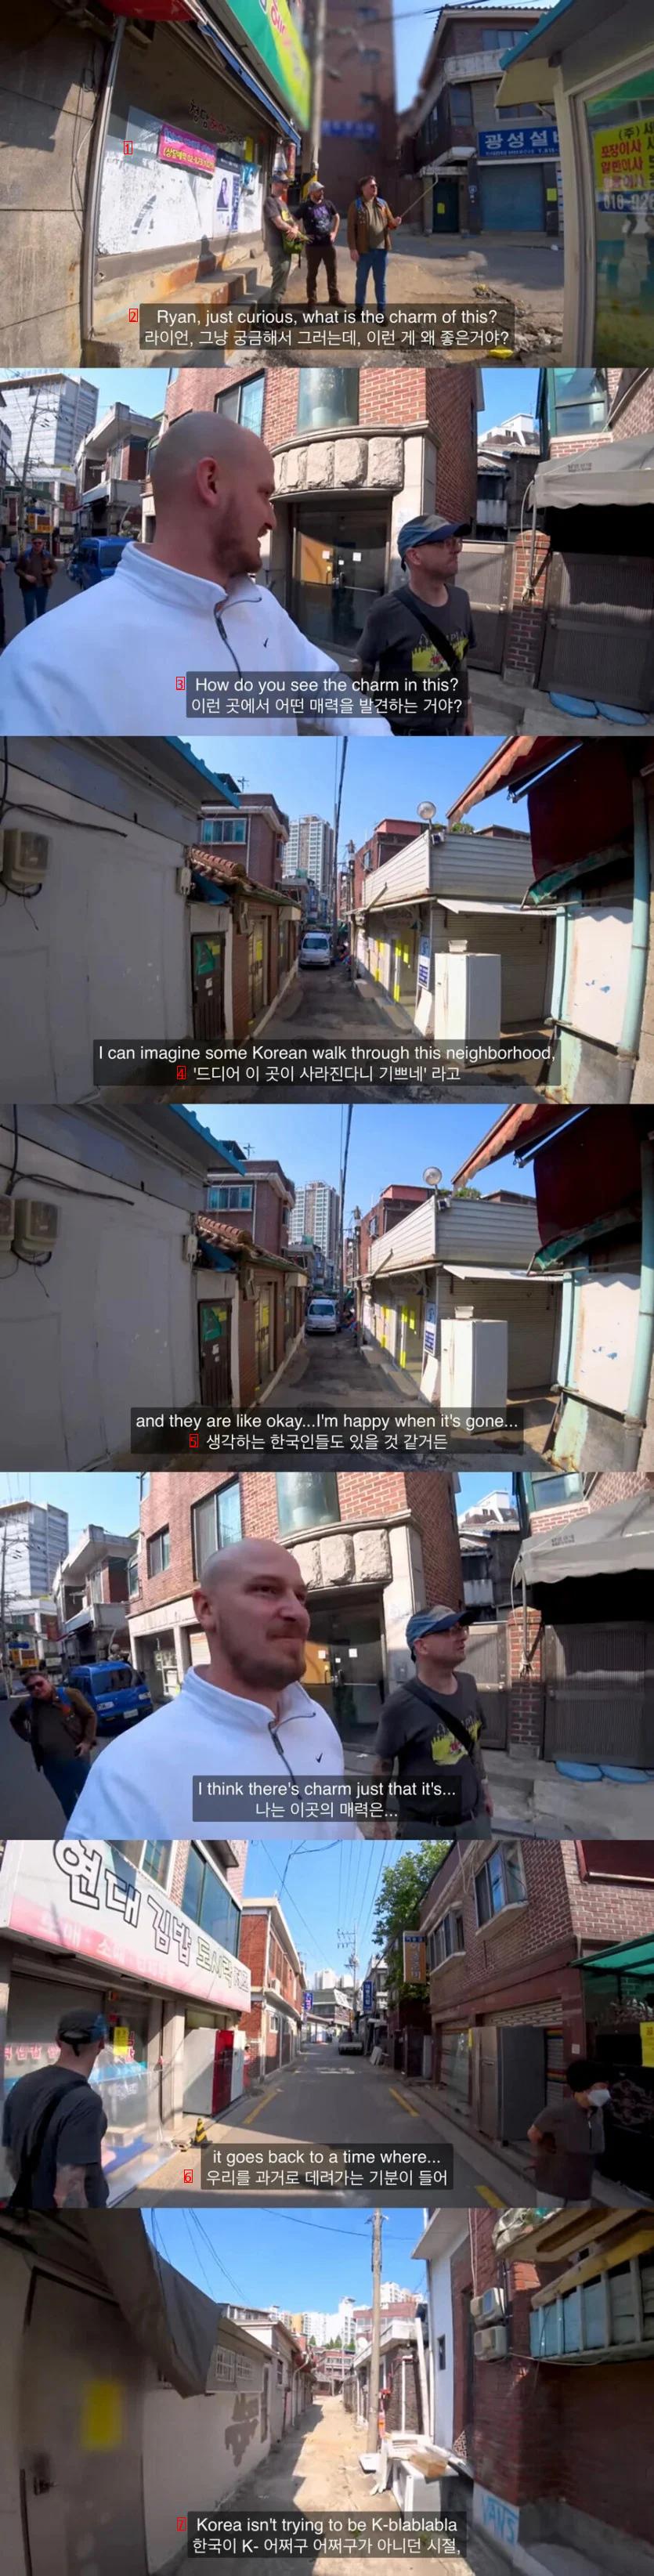 外国人が韓国の古い町が好きな理由jpg